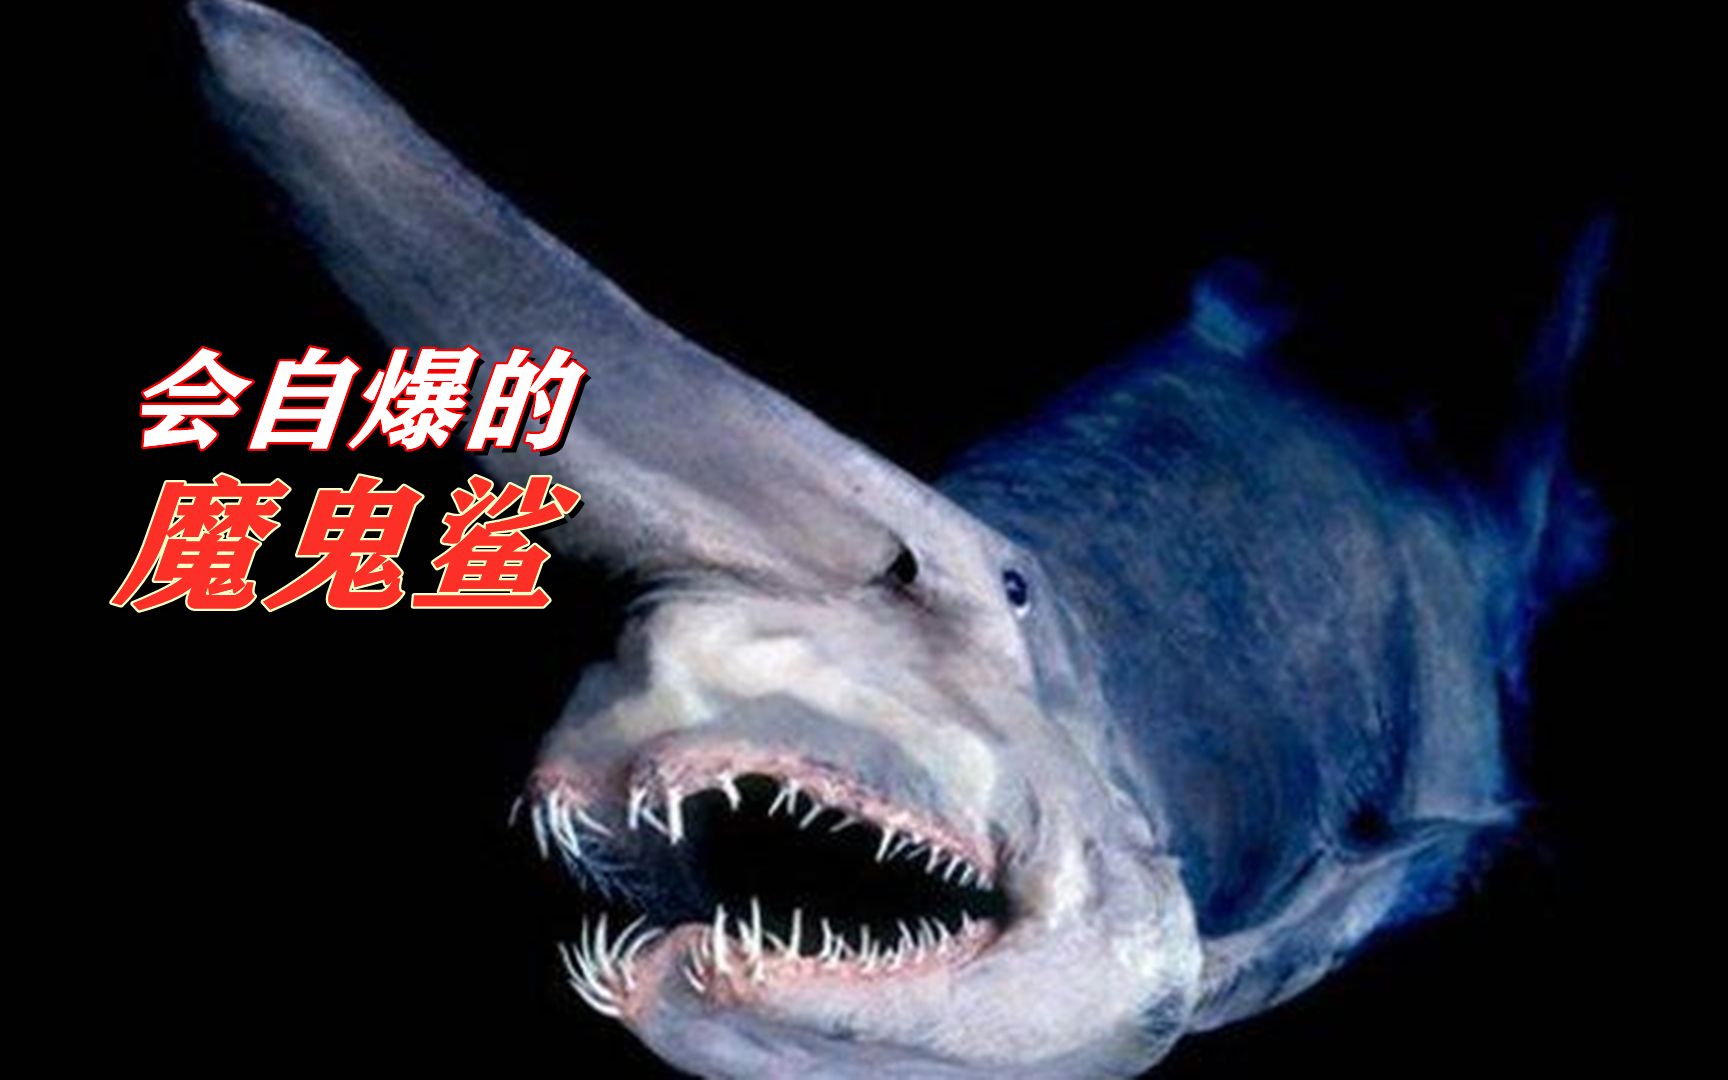 生物之谜:来自魔鬼鲨的自爆